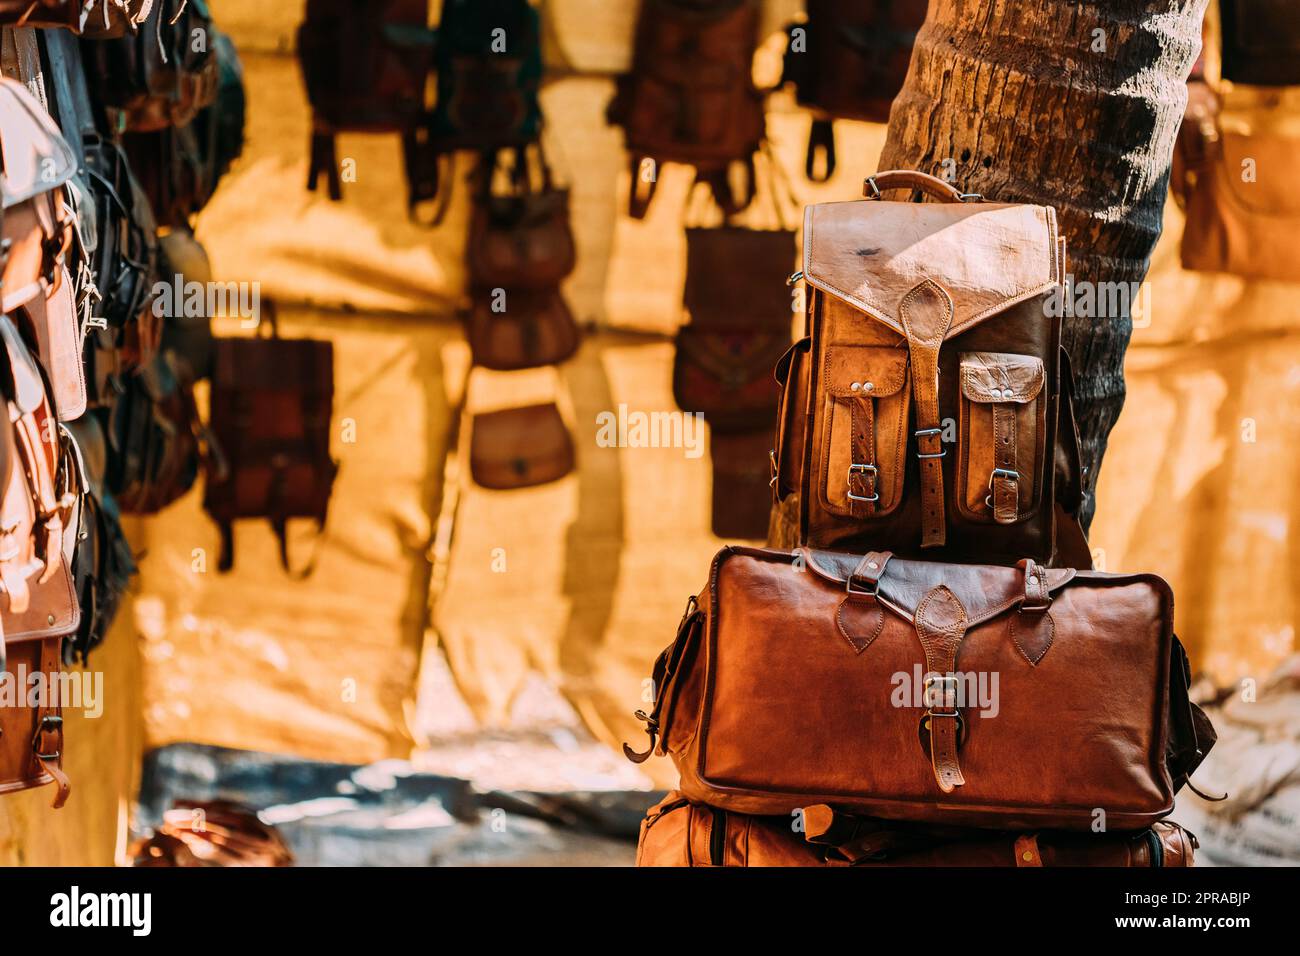 Markt Shop Mit Lederwaren - Taschen, Geldbörsen, Rucksäcke, Aktentaschen Verschiedenen Farben Und Größen Stockfoto